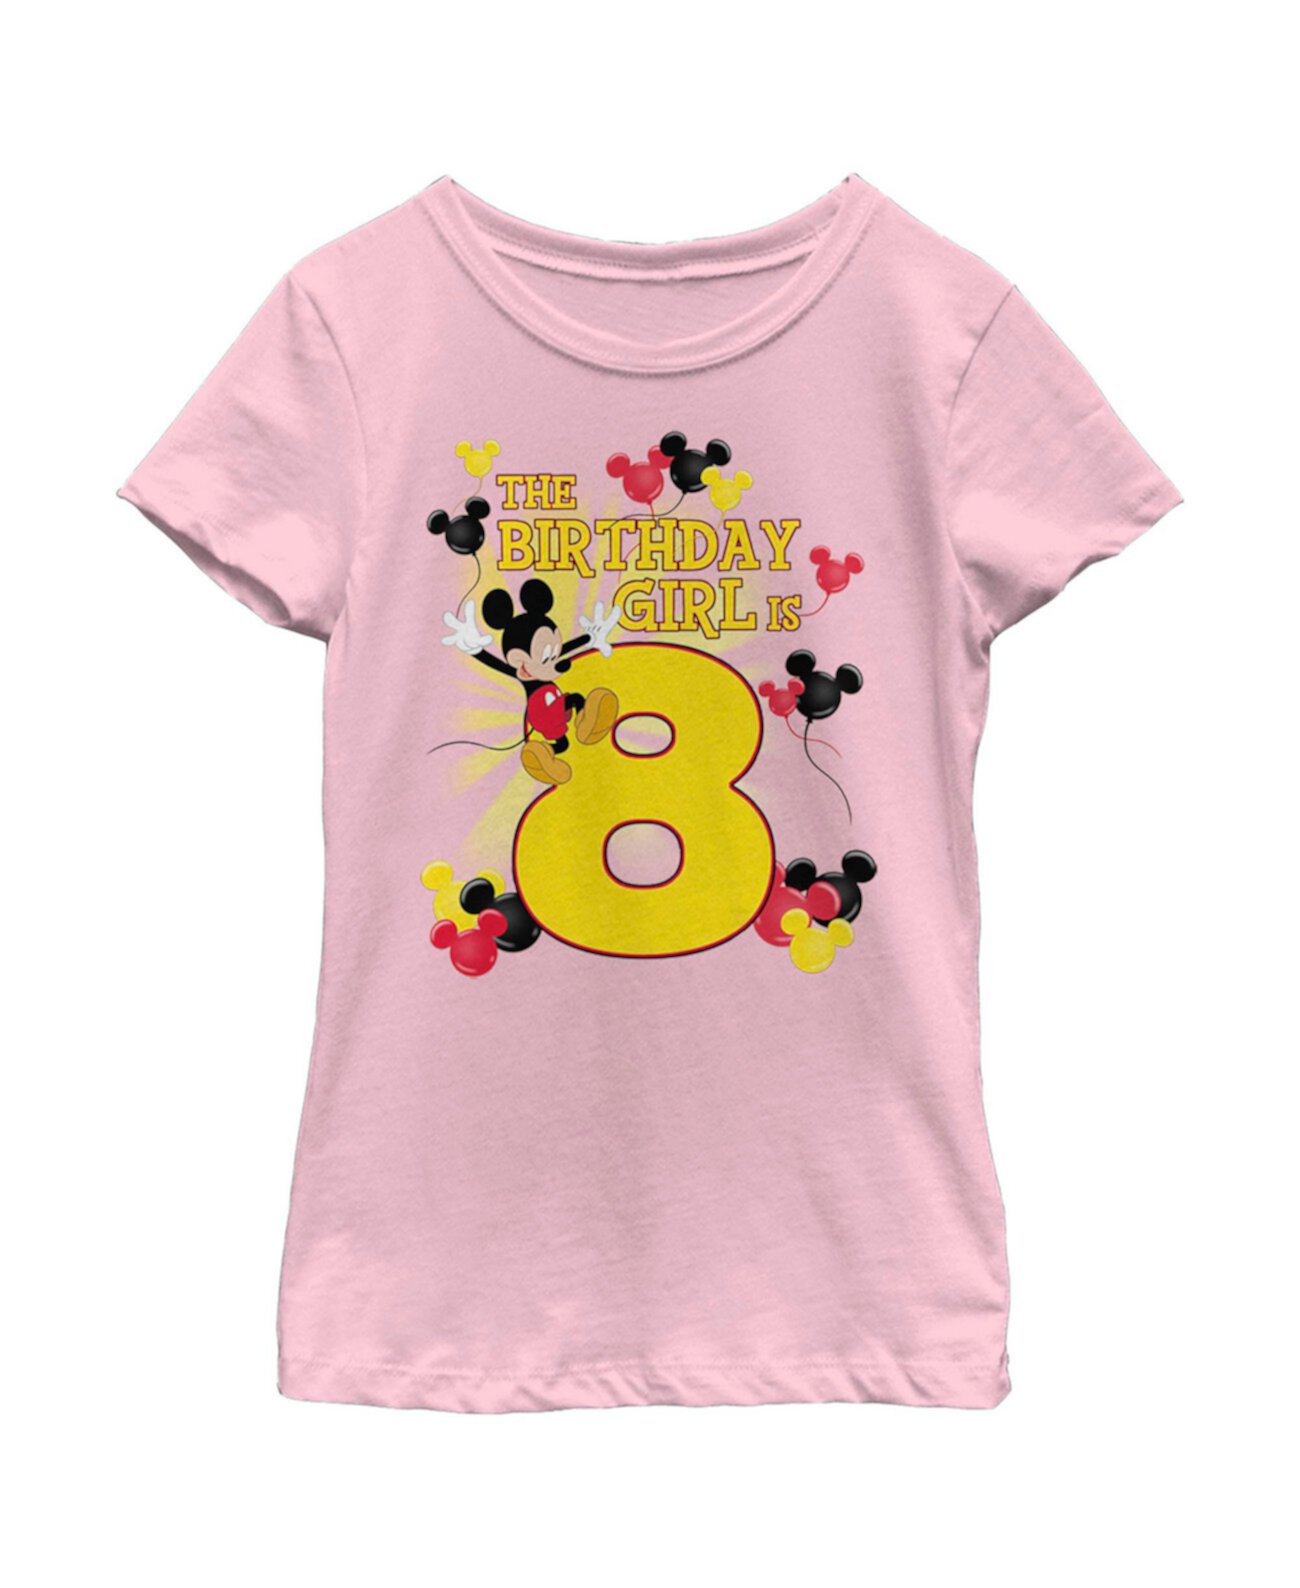 Детская футболка «Микки и друзья Микки Маус» для девочек «Именинница 8 лет» Disney